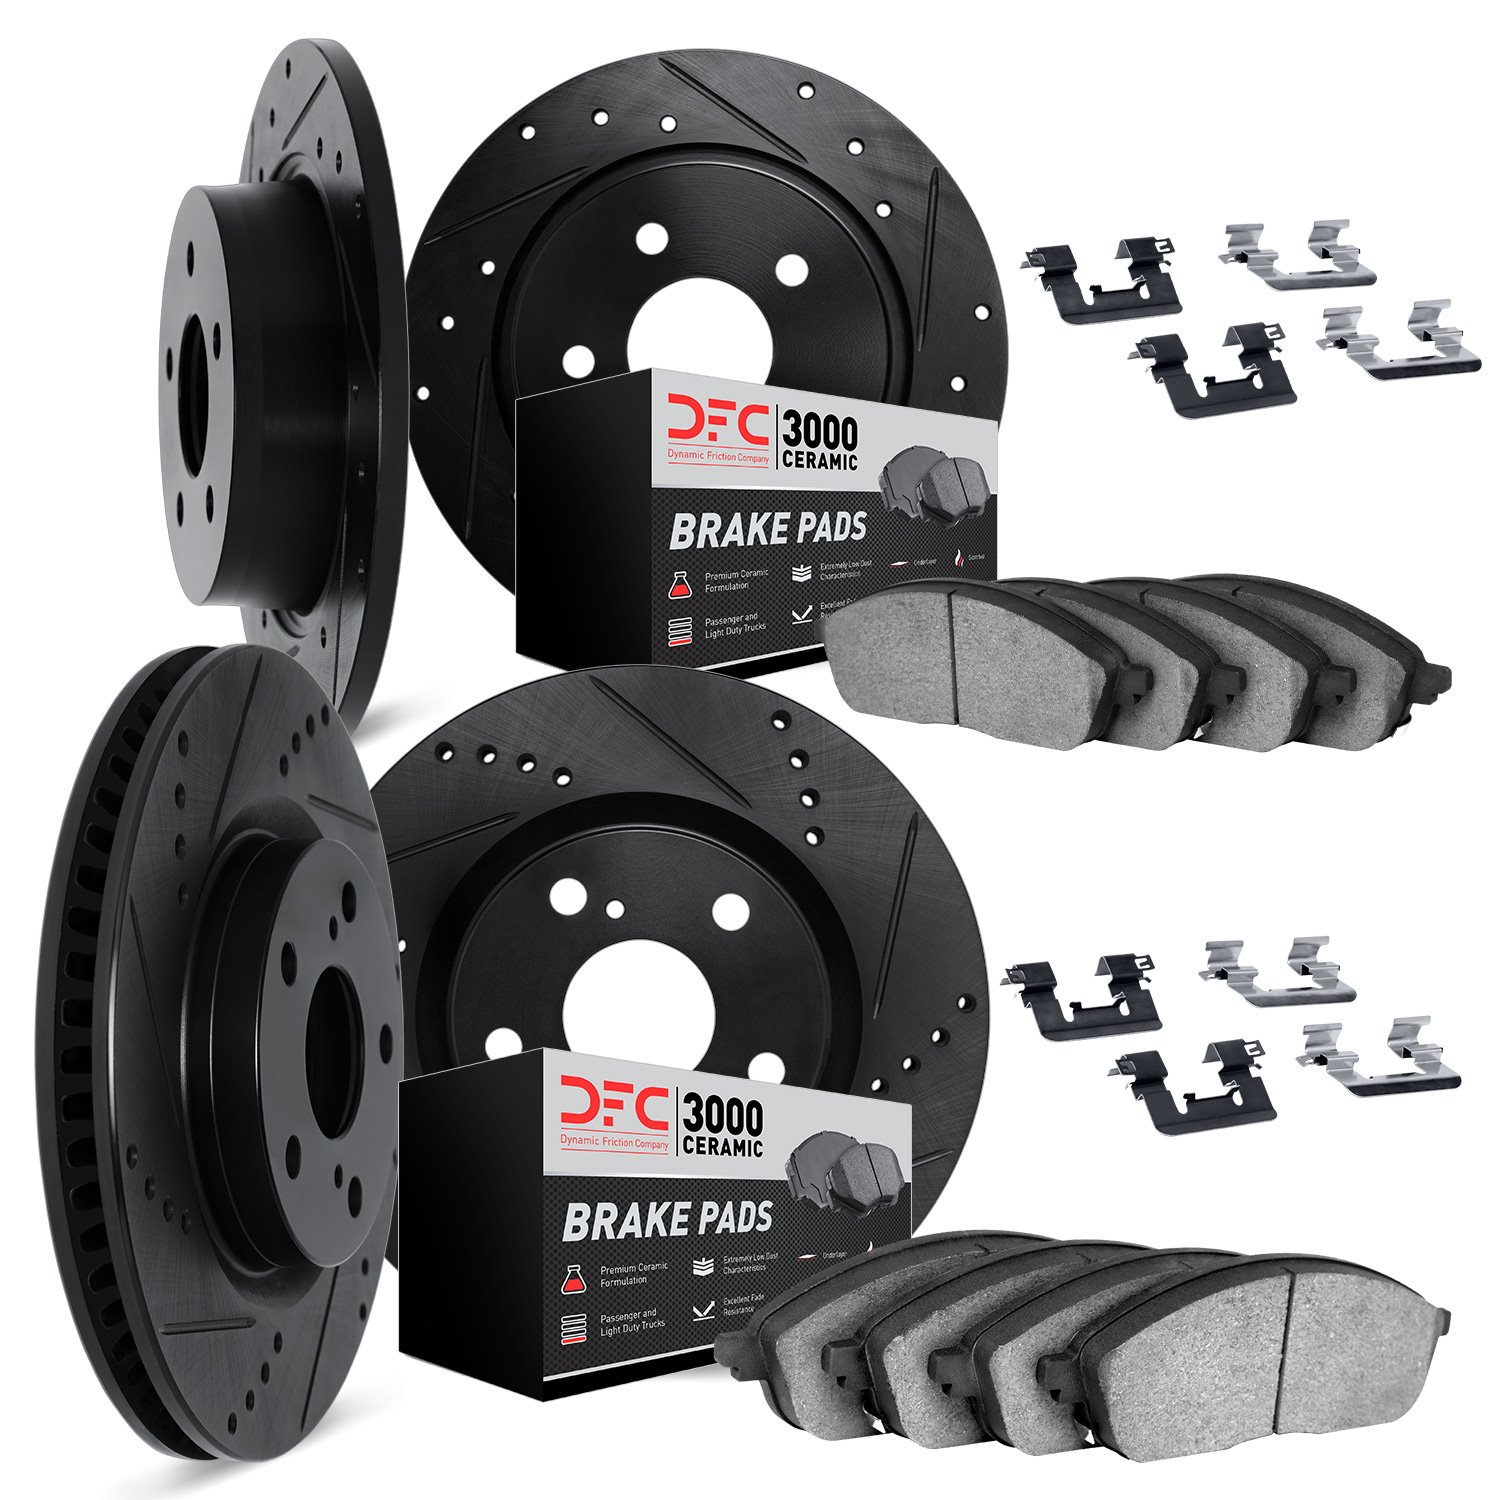 8314-76099 Drilled/Slotted Brake Rotors with 3000-Series Ceramic Brake Pads Kit & Hardware [Black], 2014-2015 Lexus/Toyota/Scion